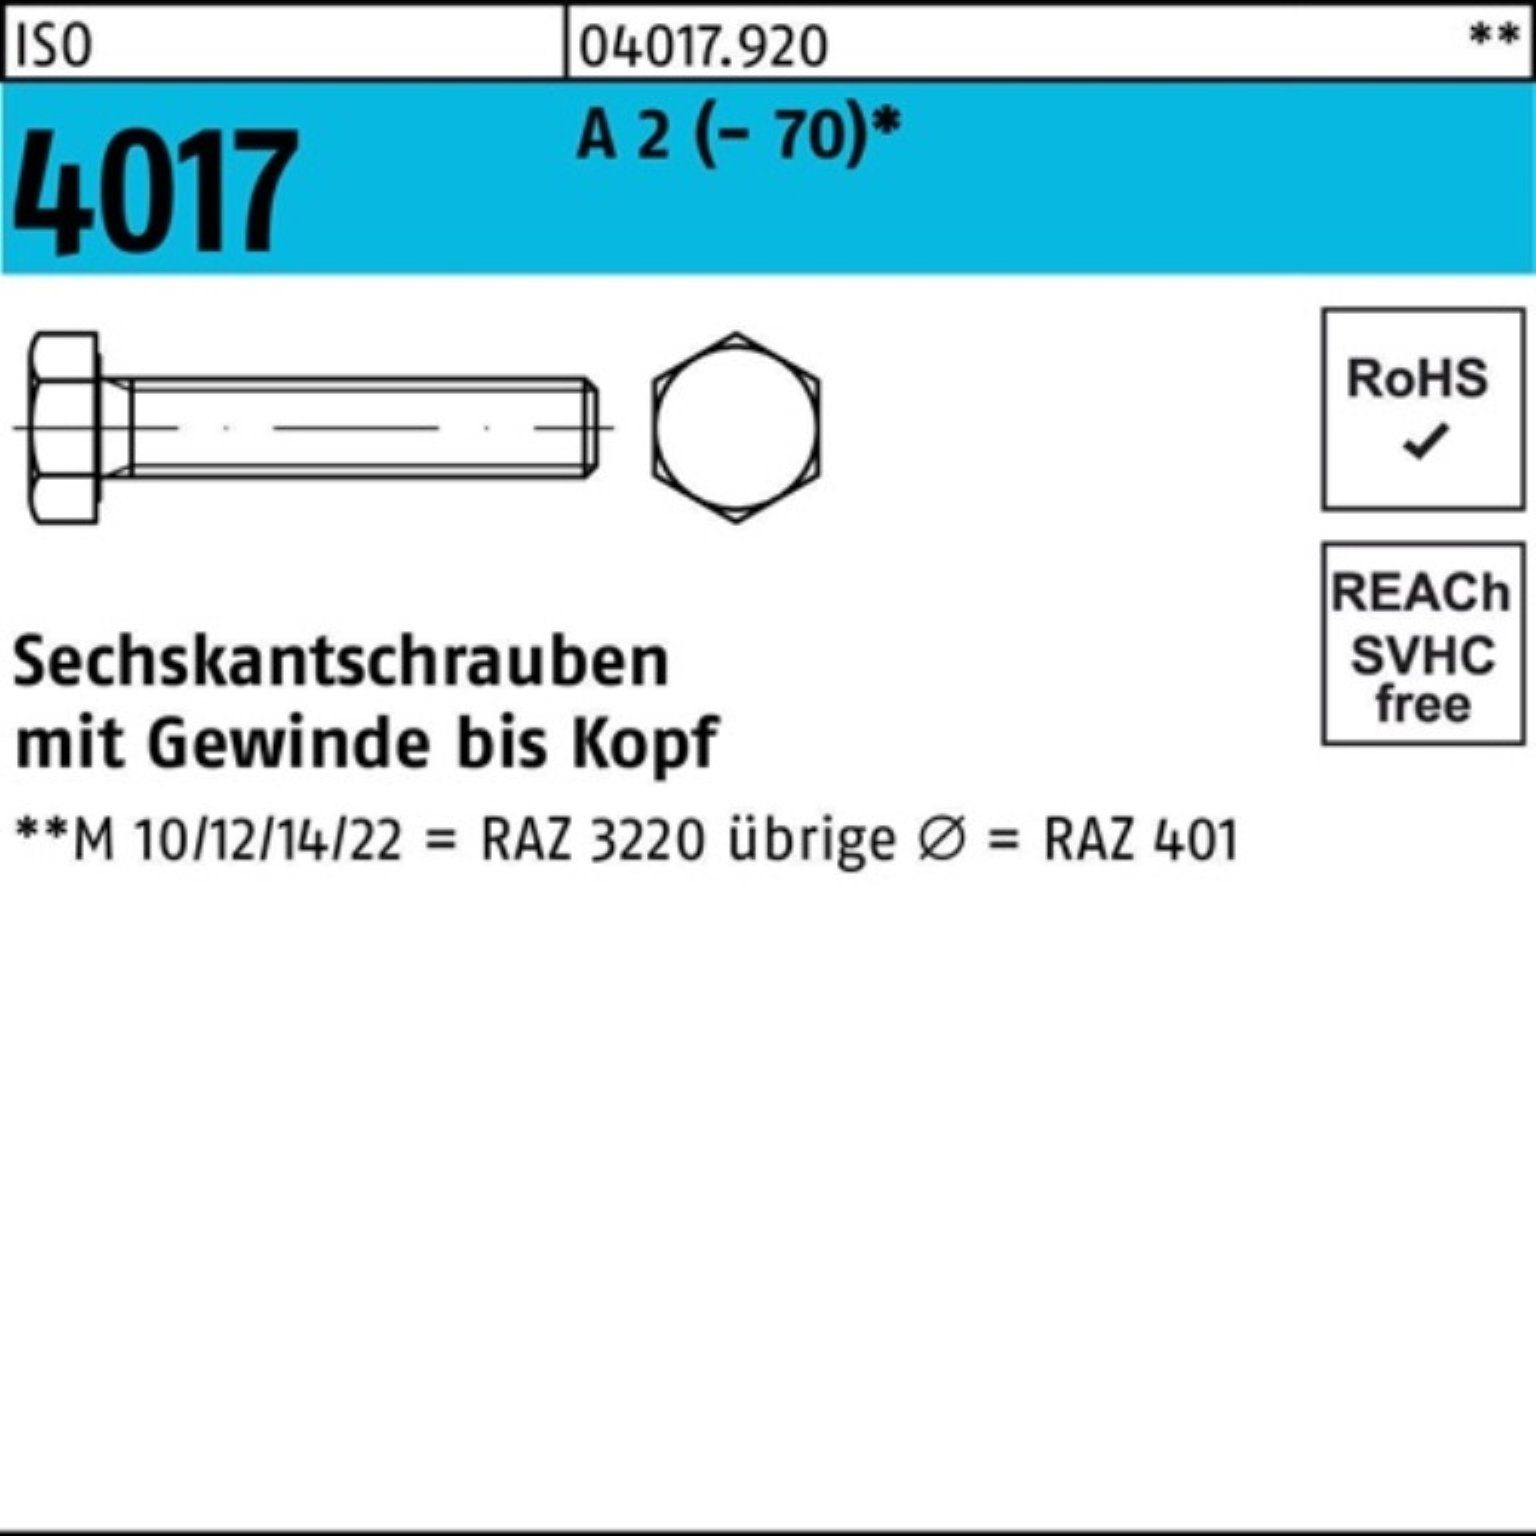 Bufab Sechskantschraube 100er Pack Sechskantschraube ISO 4017 VG M14x 130 A 2 (70) 25 Stück